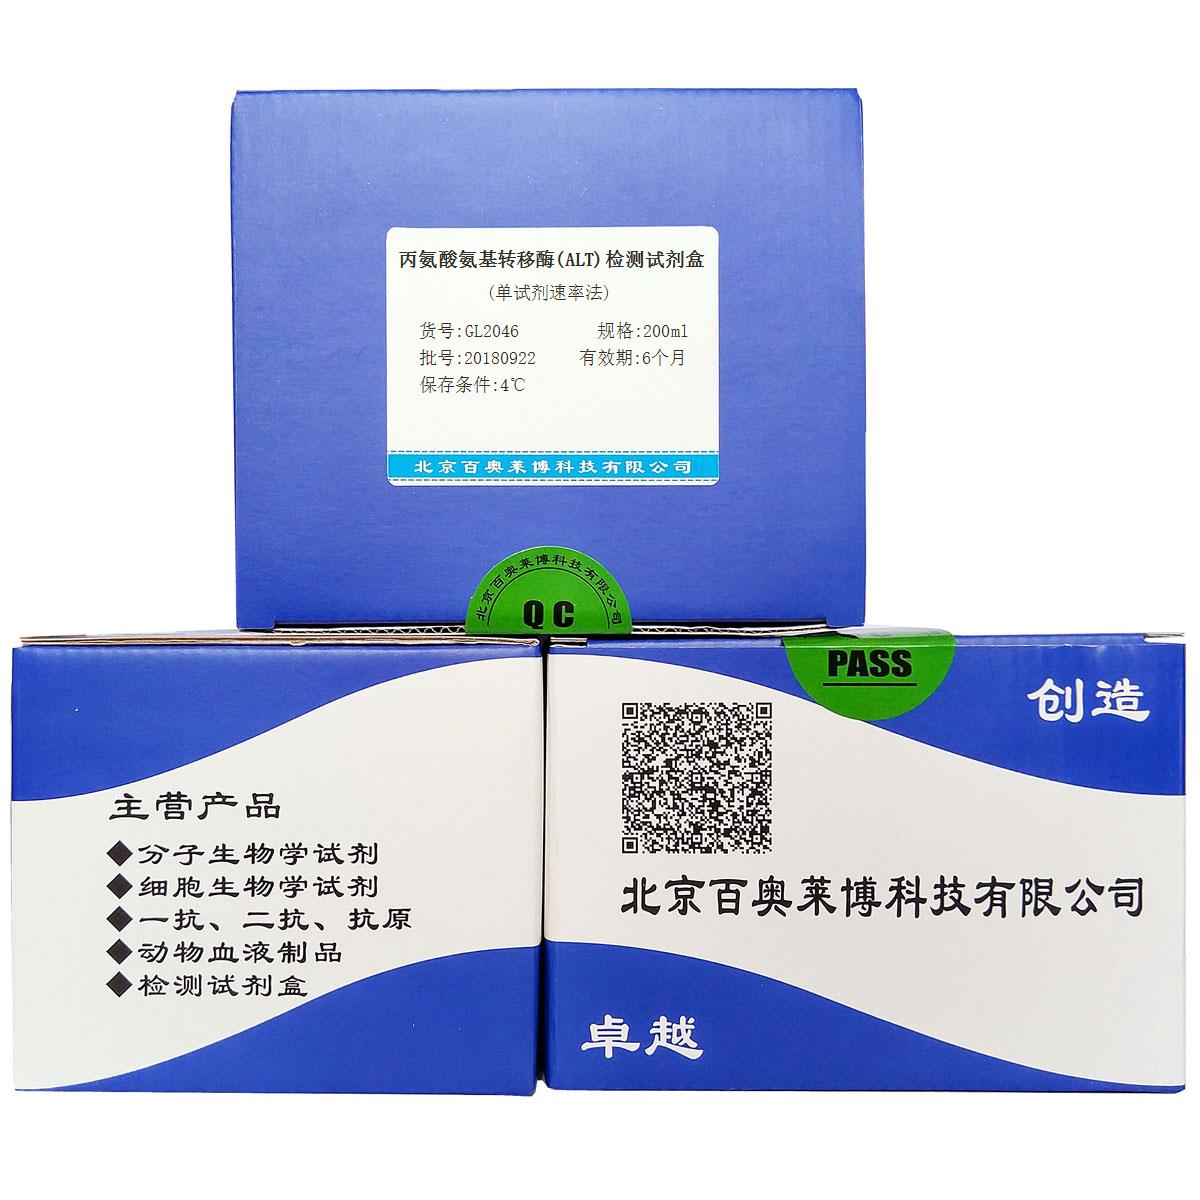 丙氨酸氨基转移酶(ALT)检测试剂盒(单试剂速率法)